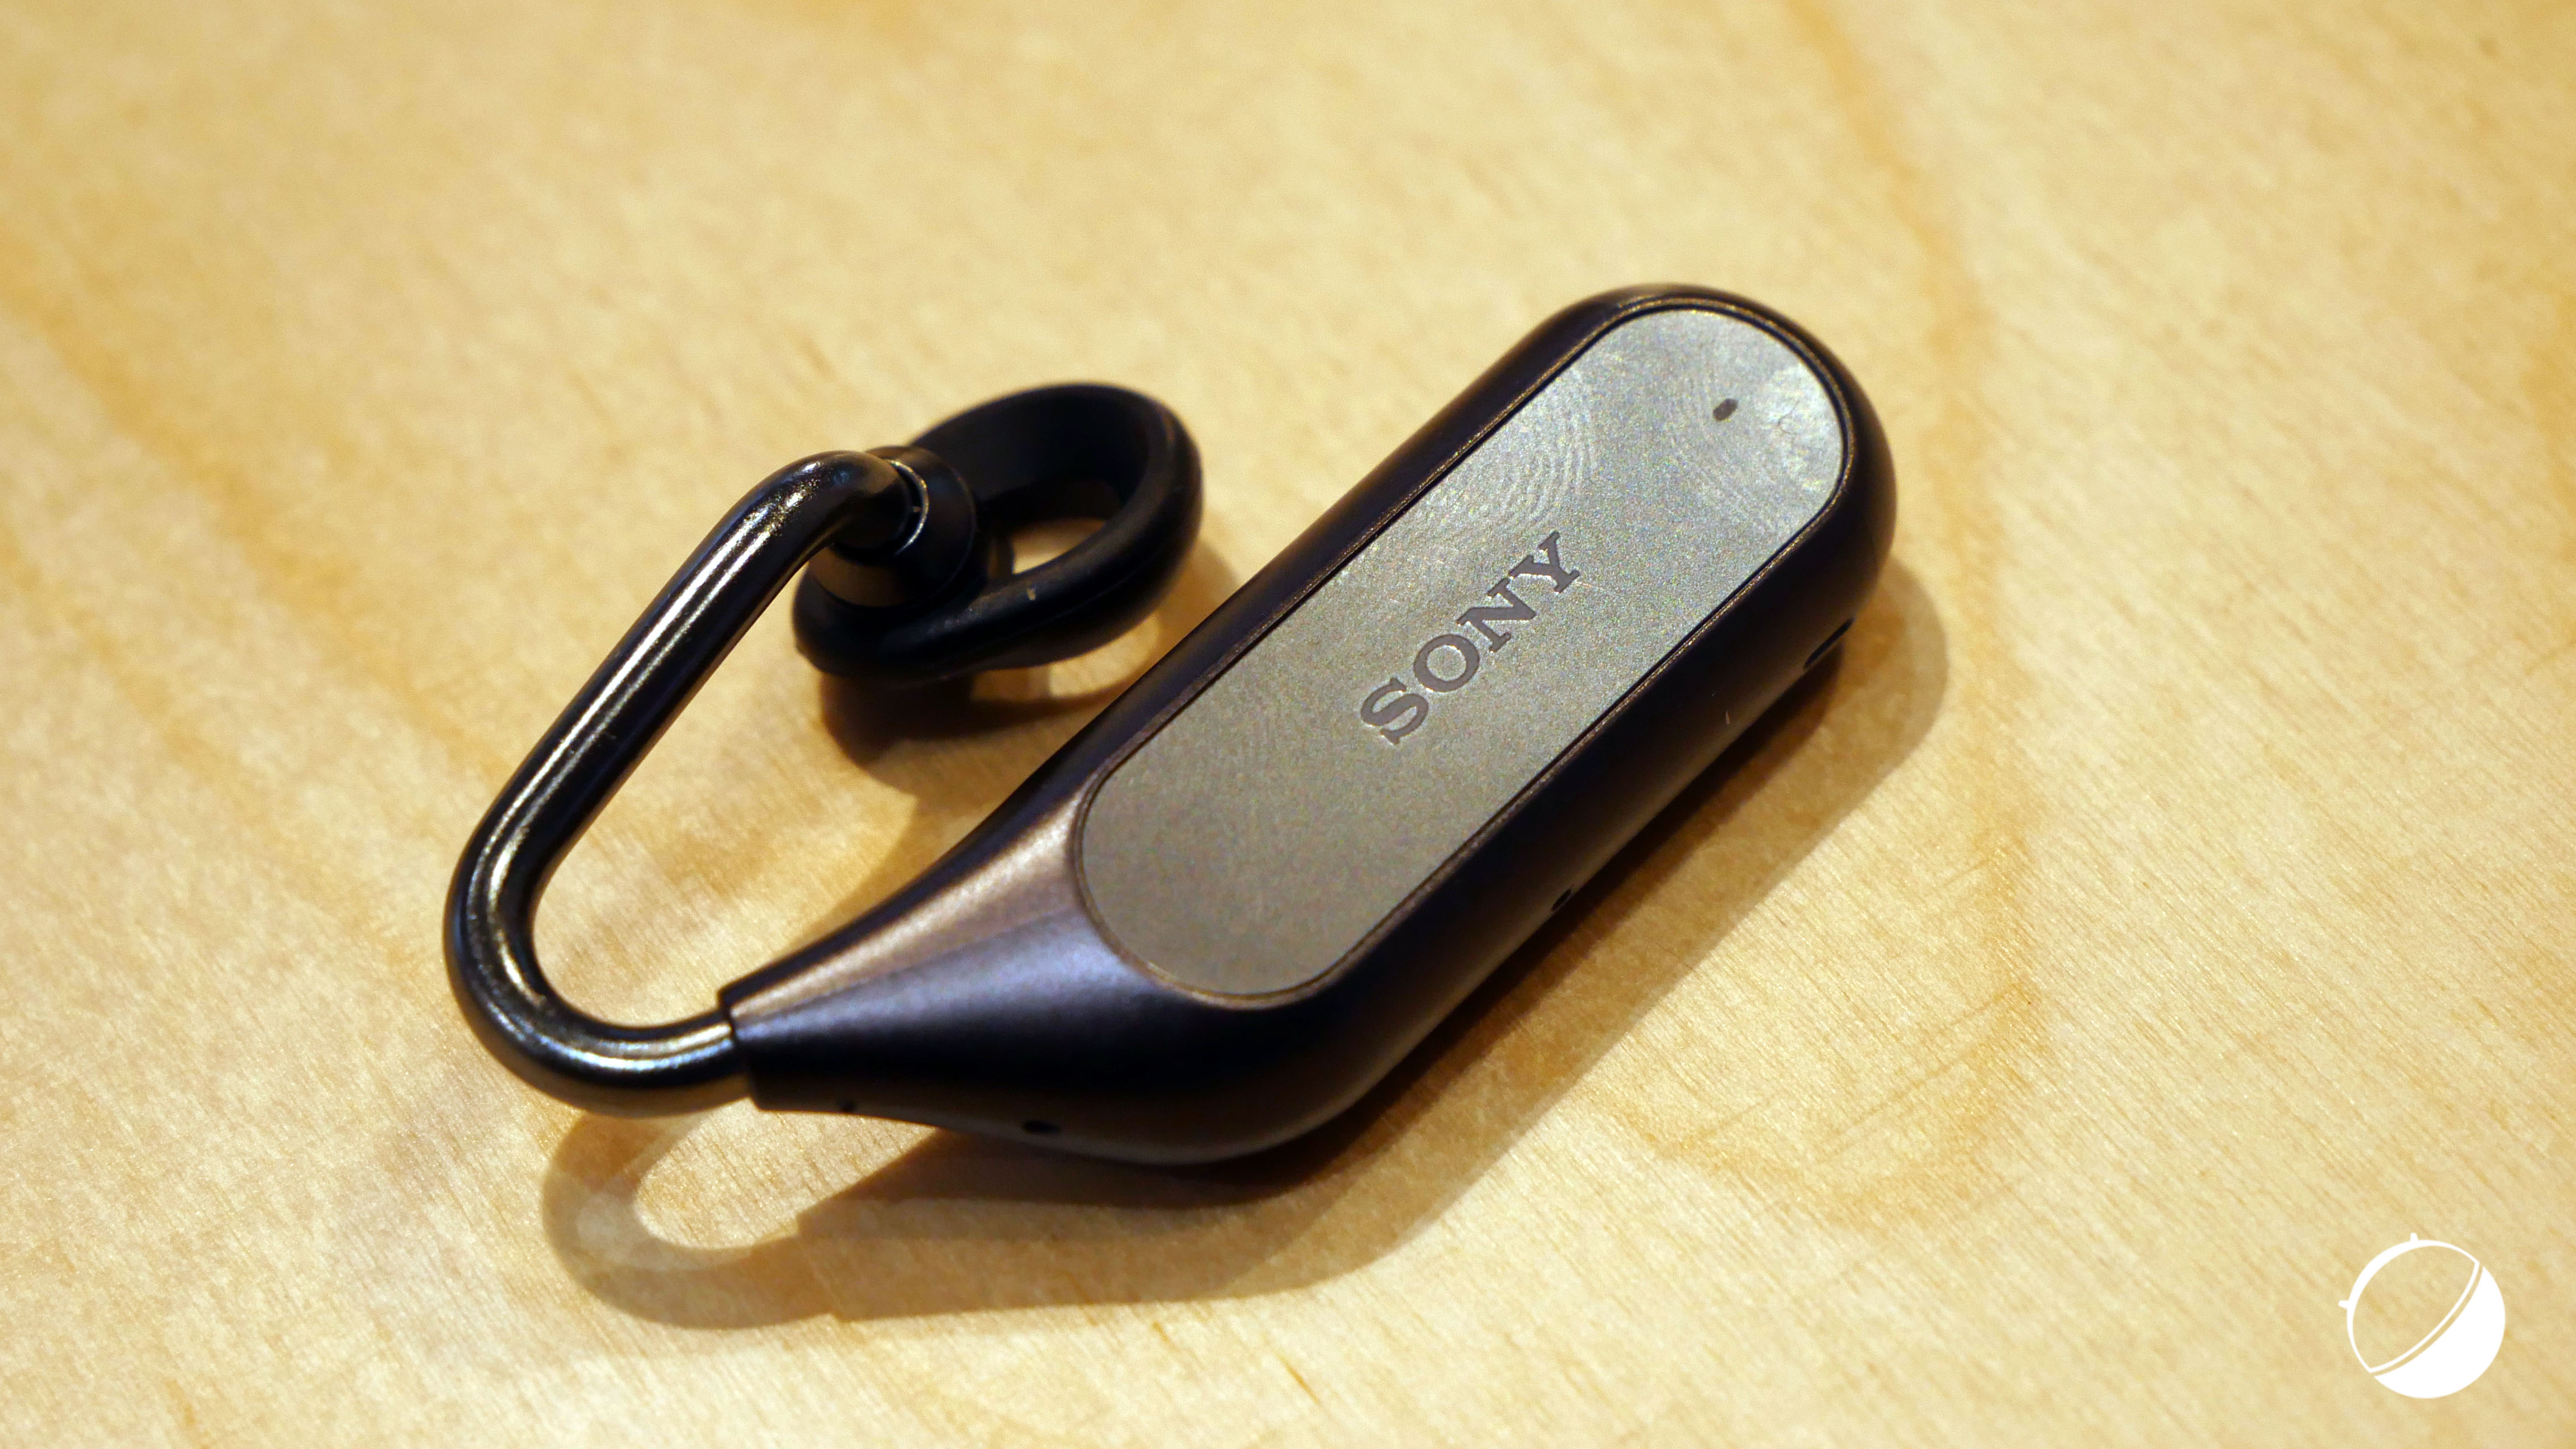 Sony Xperia Ear Duo iso